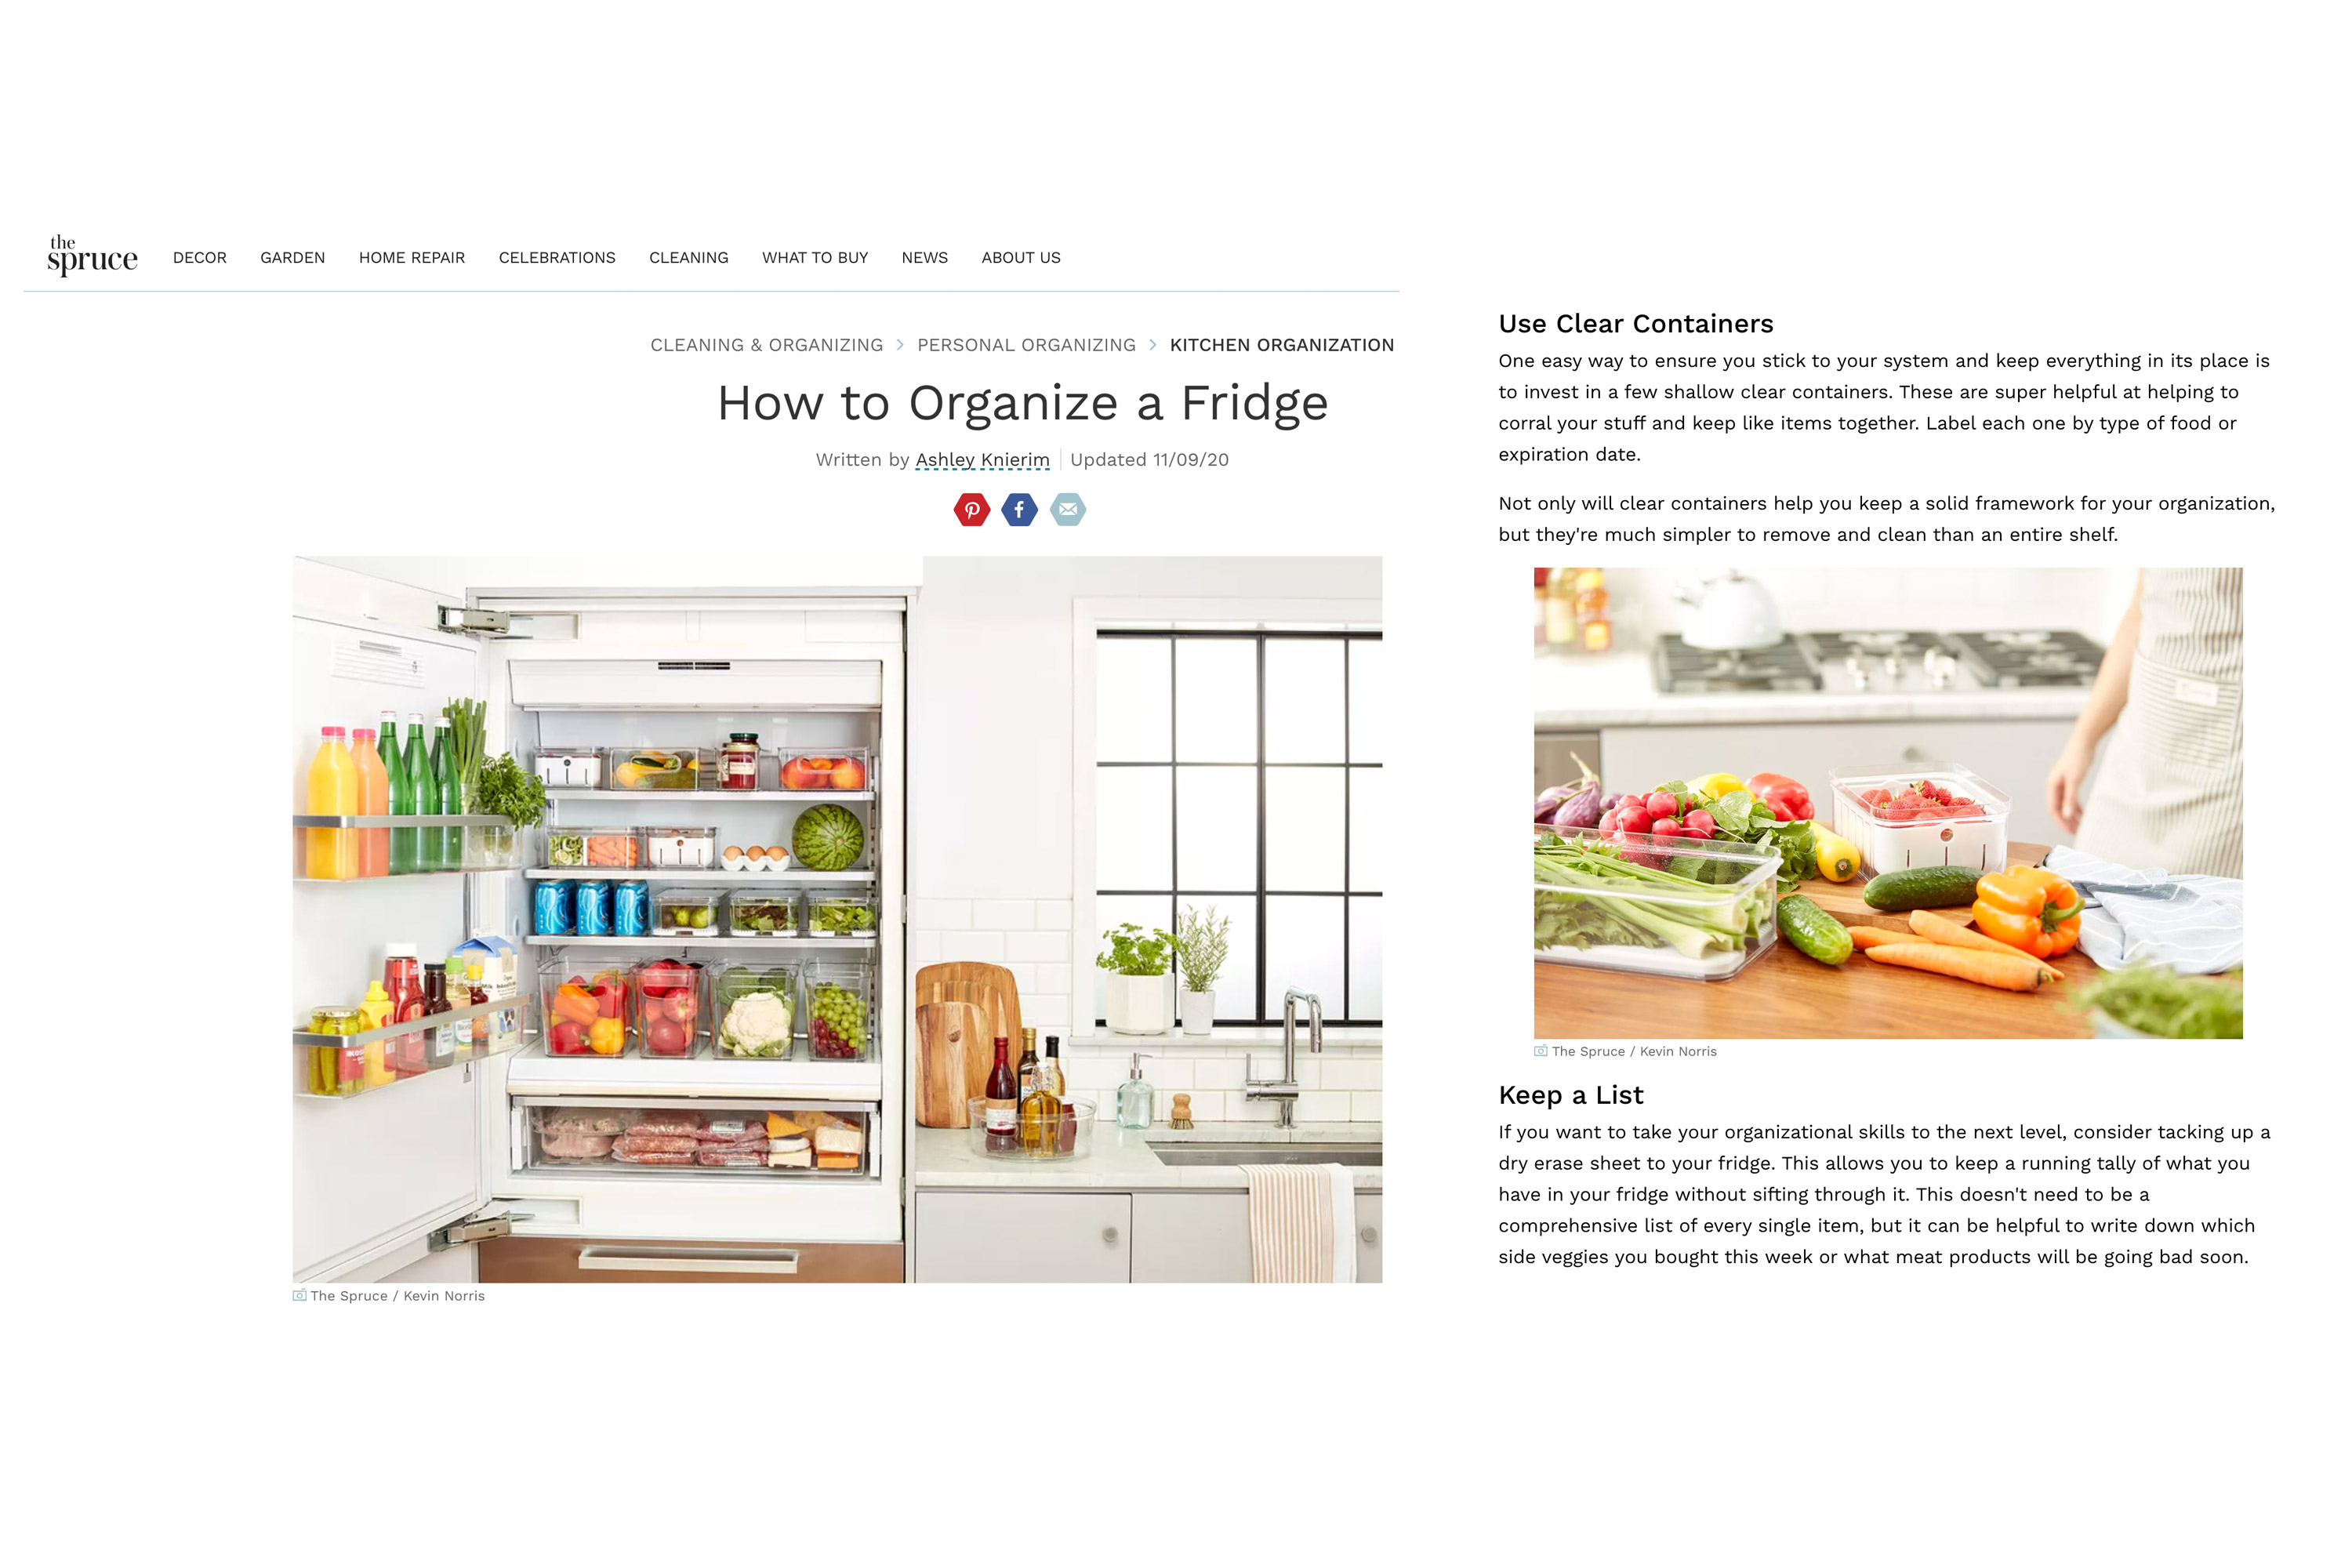 spruce-fridge-organization